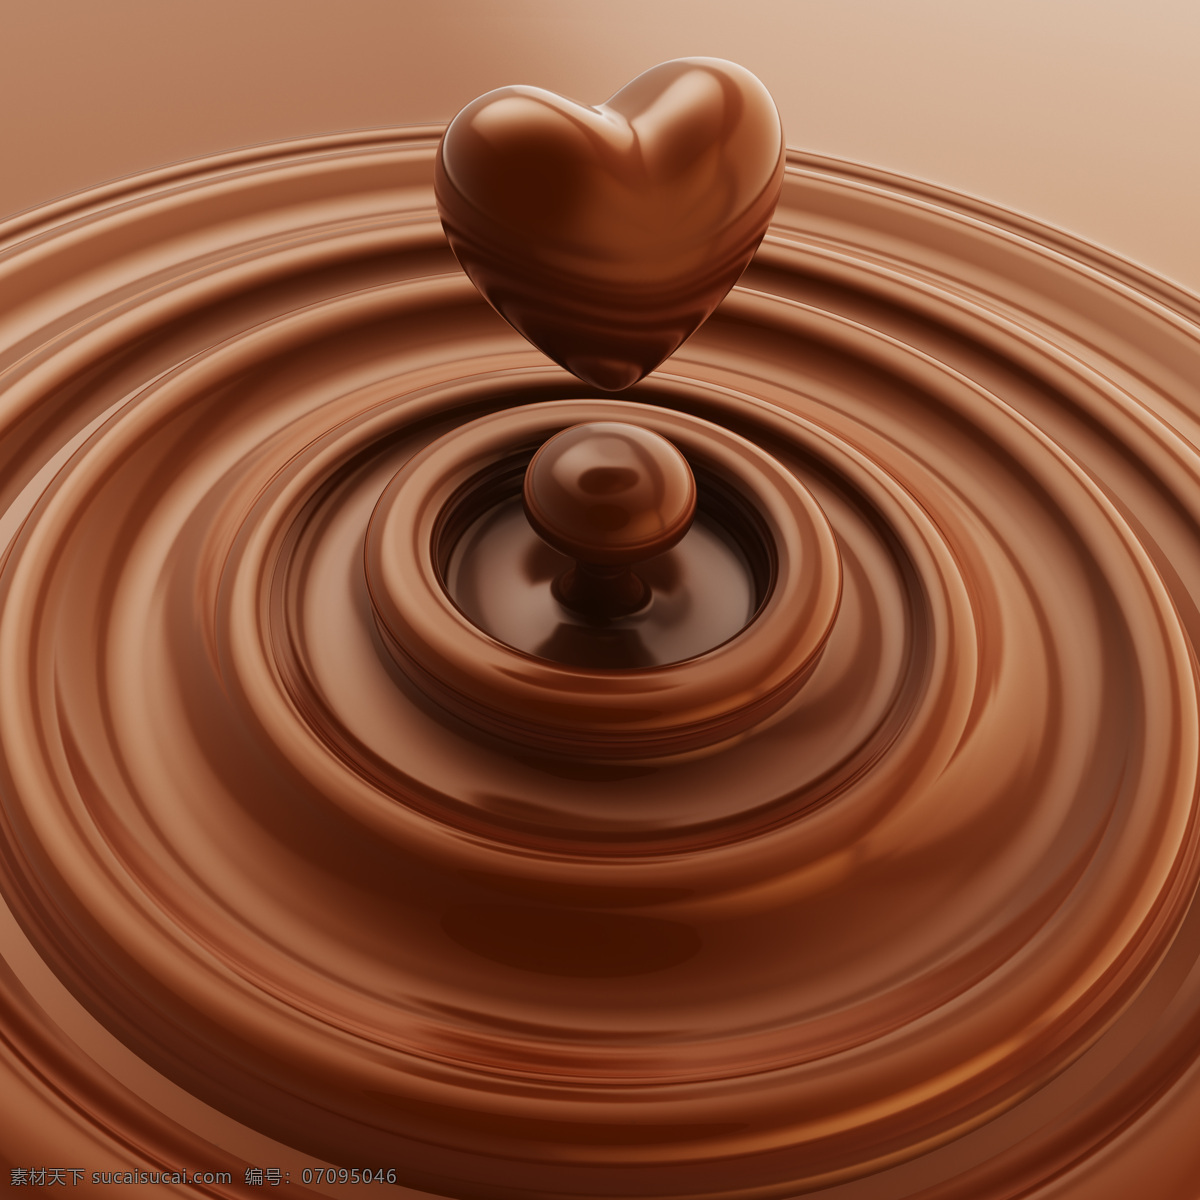 心形巧克力 心形 图案 美食 食物 巧克力 巧克力背景 底纹背景 纹理 中华美食 餐饮美食 红色